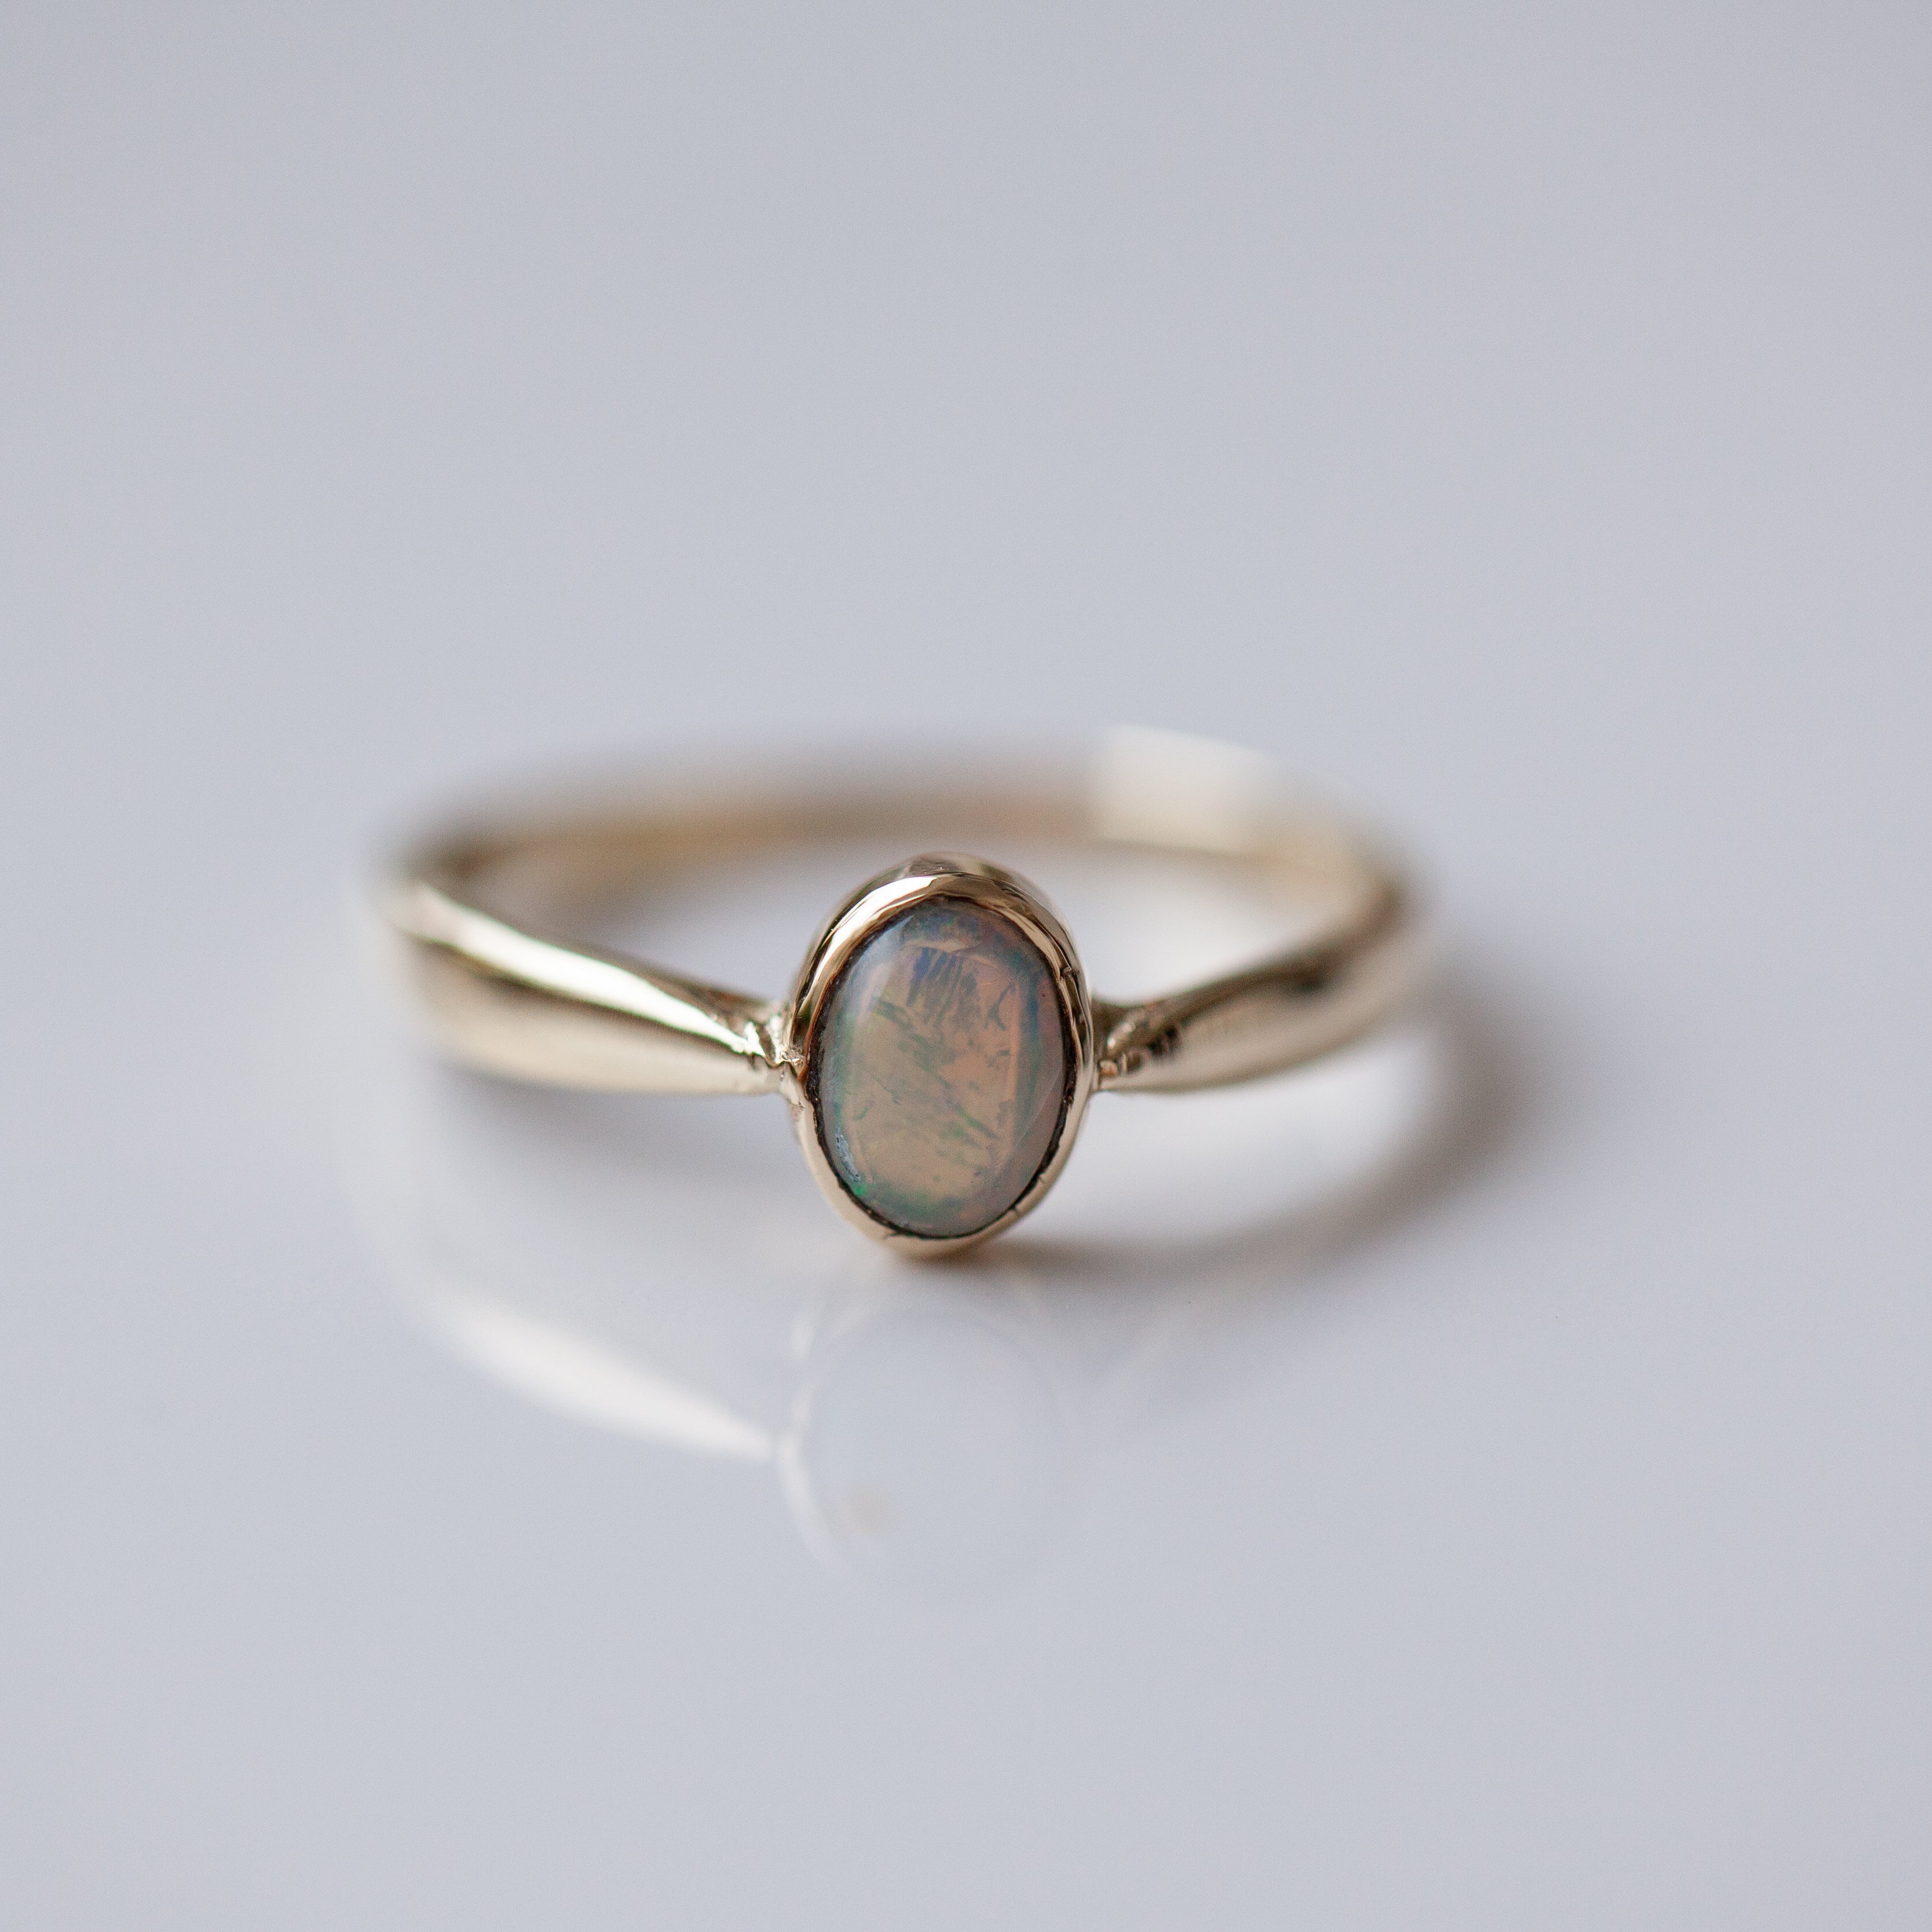 White australian opal ring